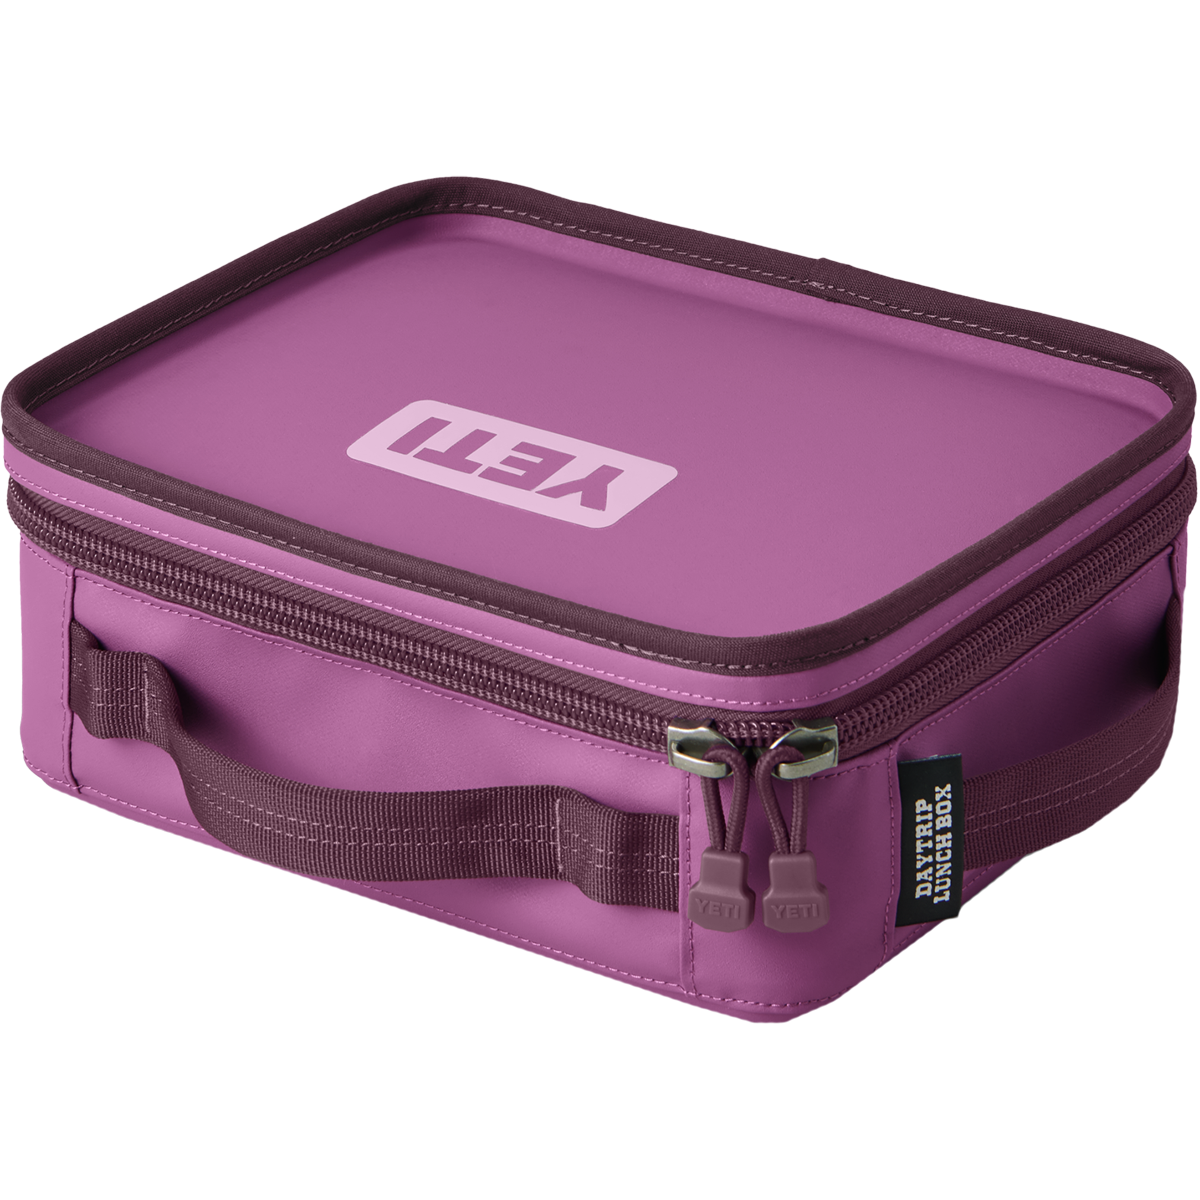  YETI Daytrip Lunch Box, Power Pink: Home & Kitchen